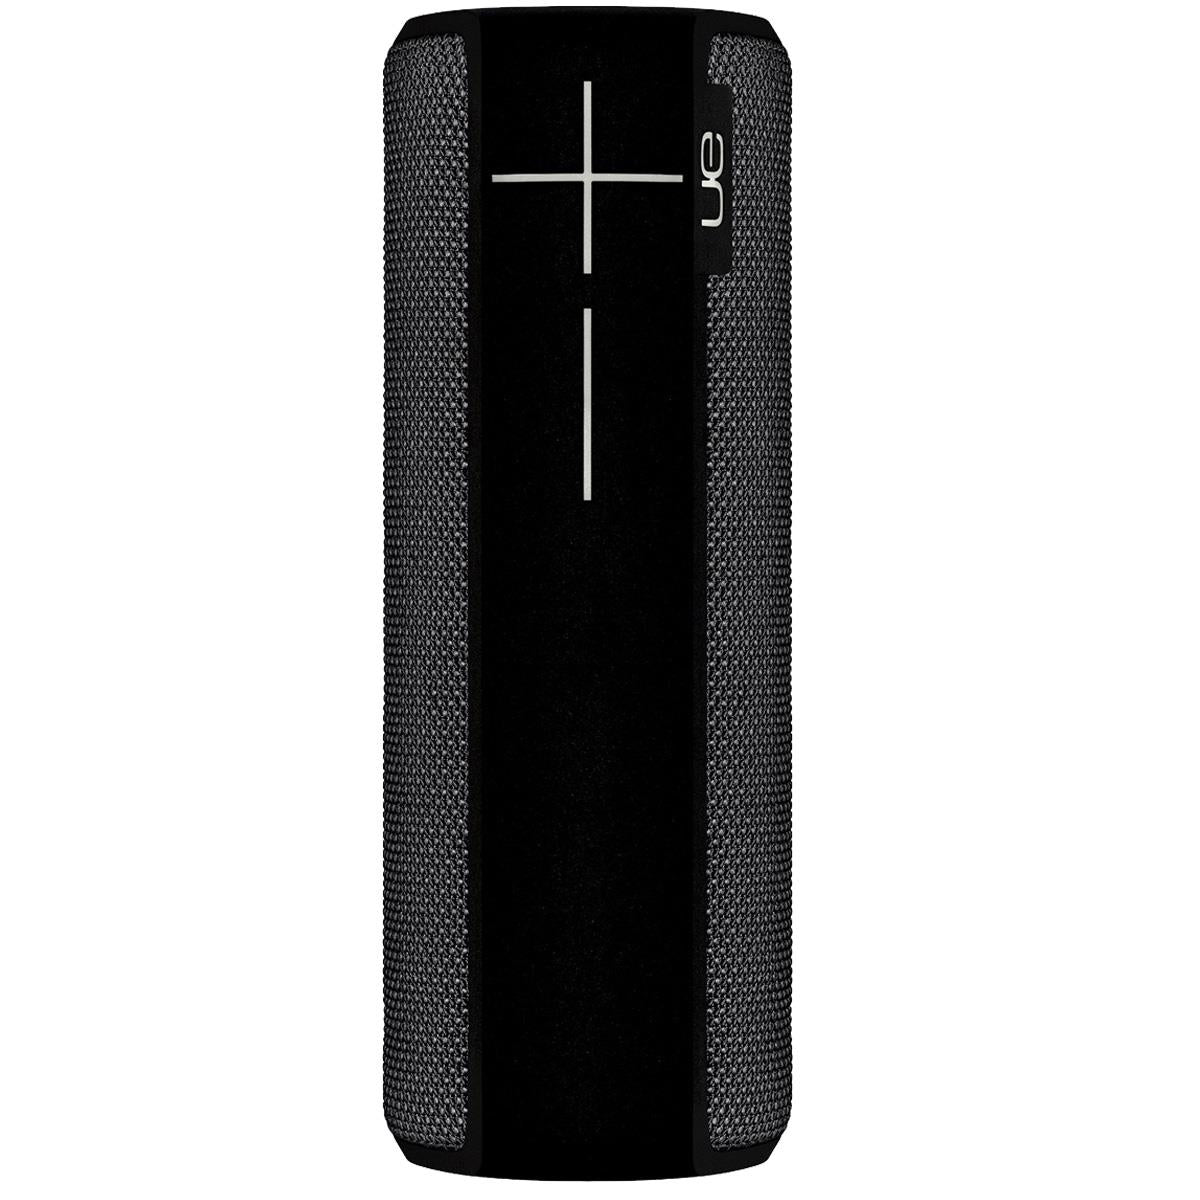 UE BOOM 2 Wireless Mobile Bluetooth Speaker, Waterproof and Shockproof